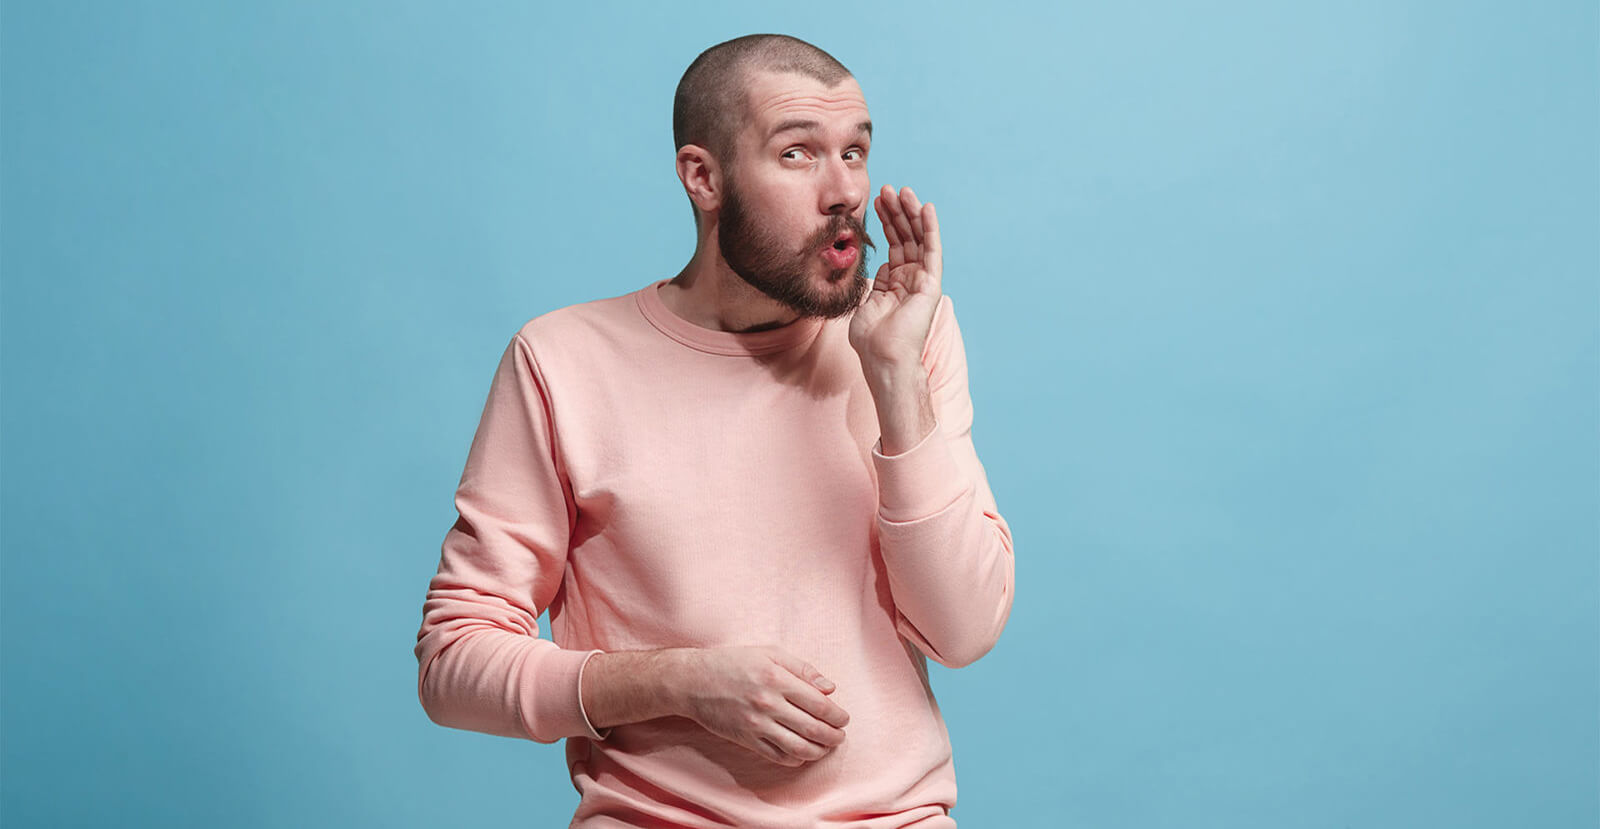 man whispering wearing pink shirt on blue background